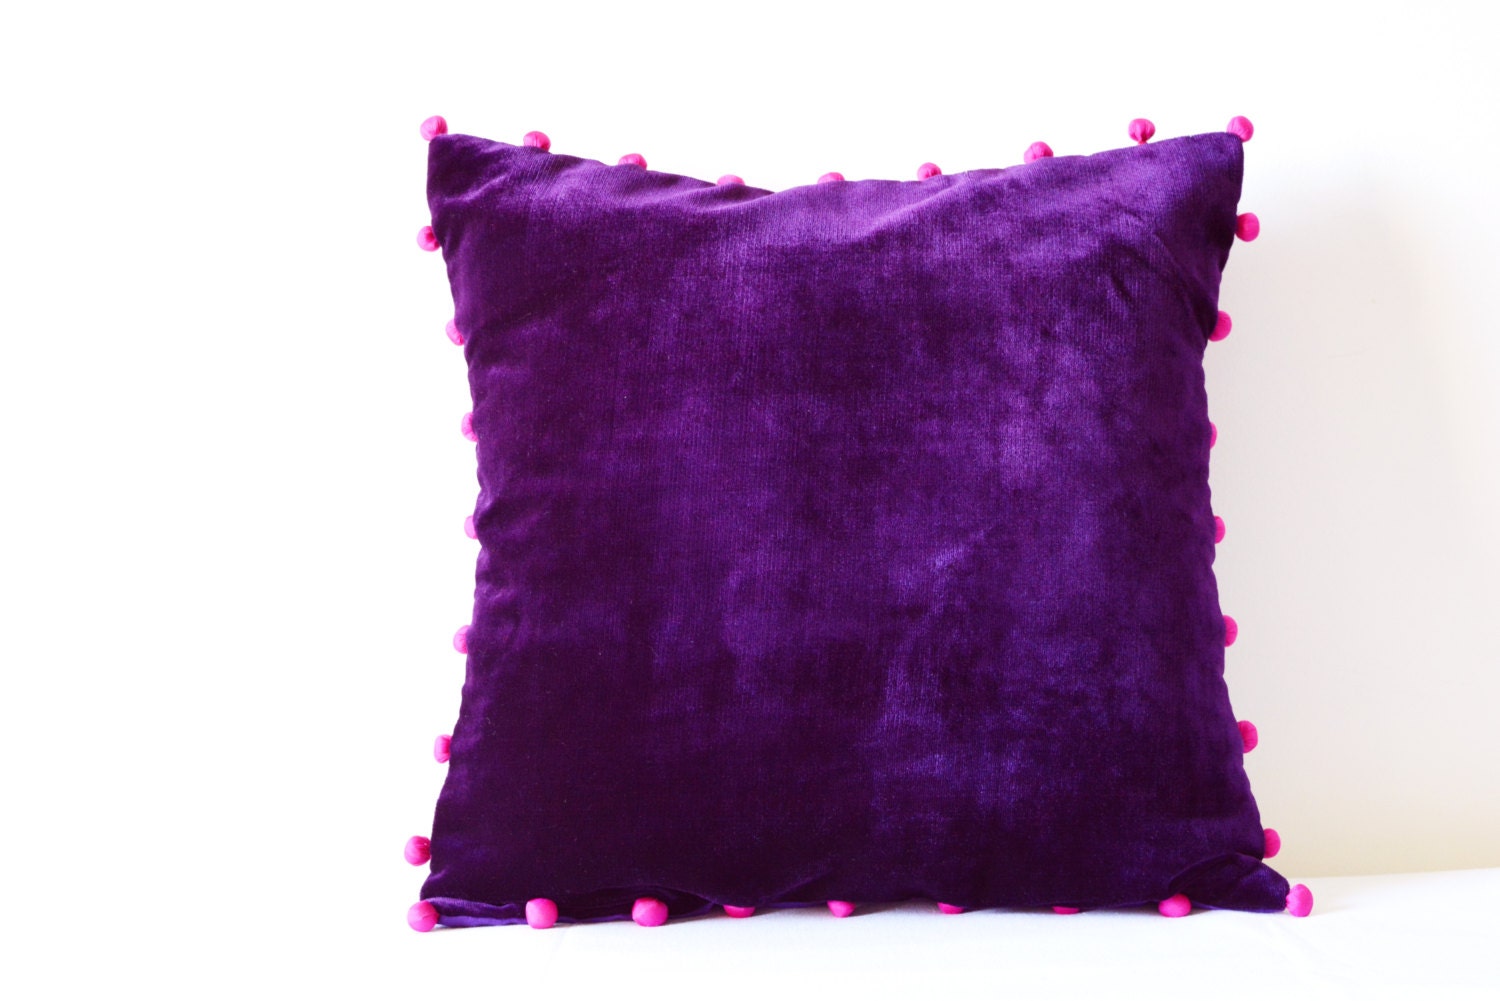  Purple  Velvet  Pillow  with Pink Pom Poms Purple  Velvet 